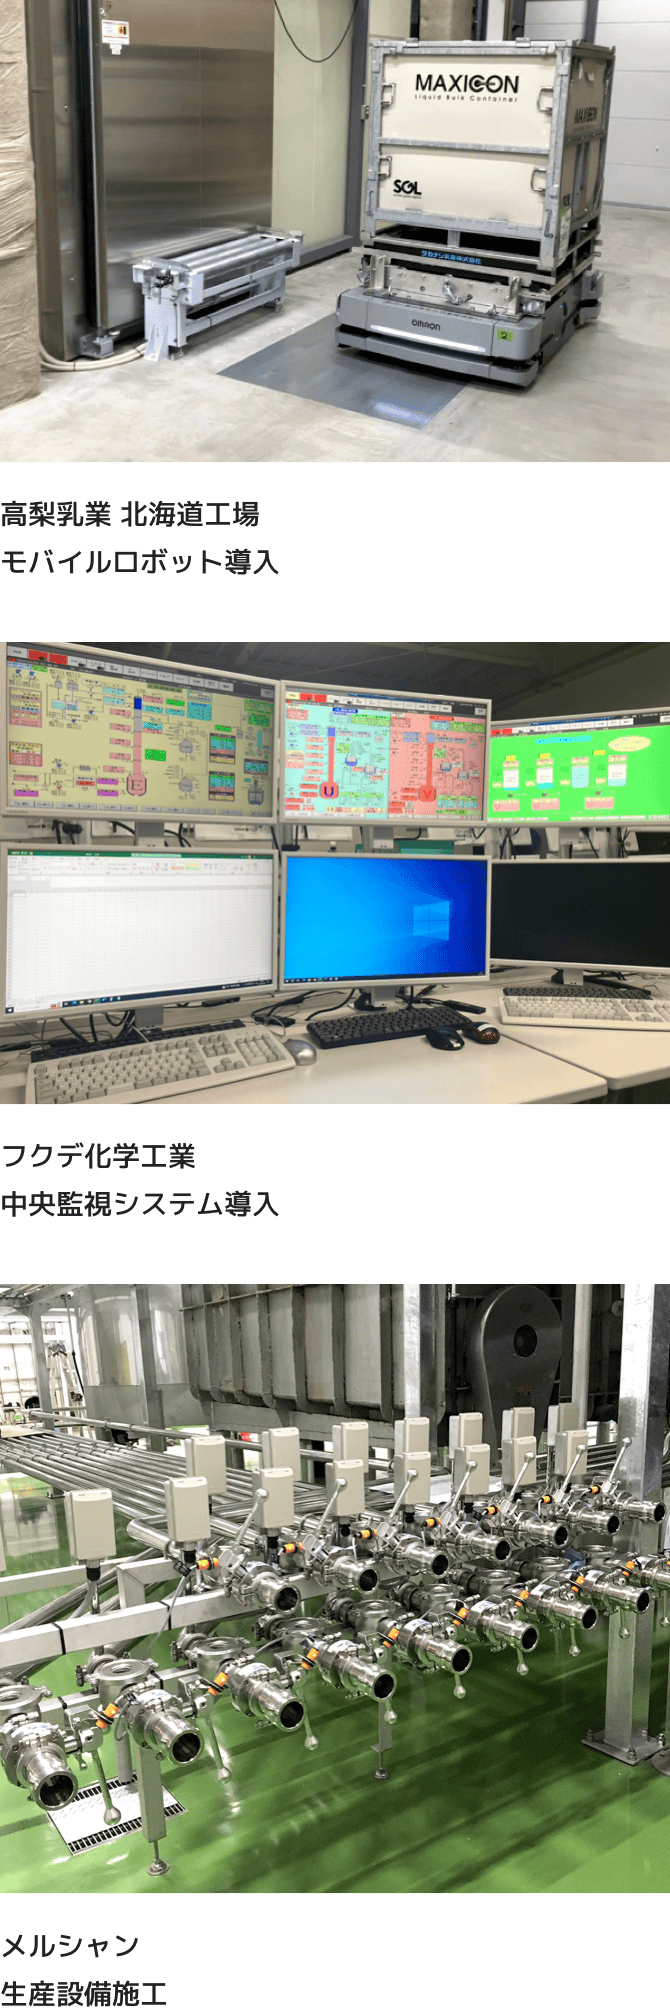 高梨乳業 北海道工場モバイルロボット導入 フクデ化学工業中央監視システム導入 メルシャン生産設備施工